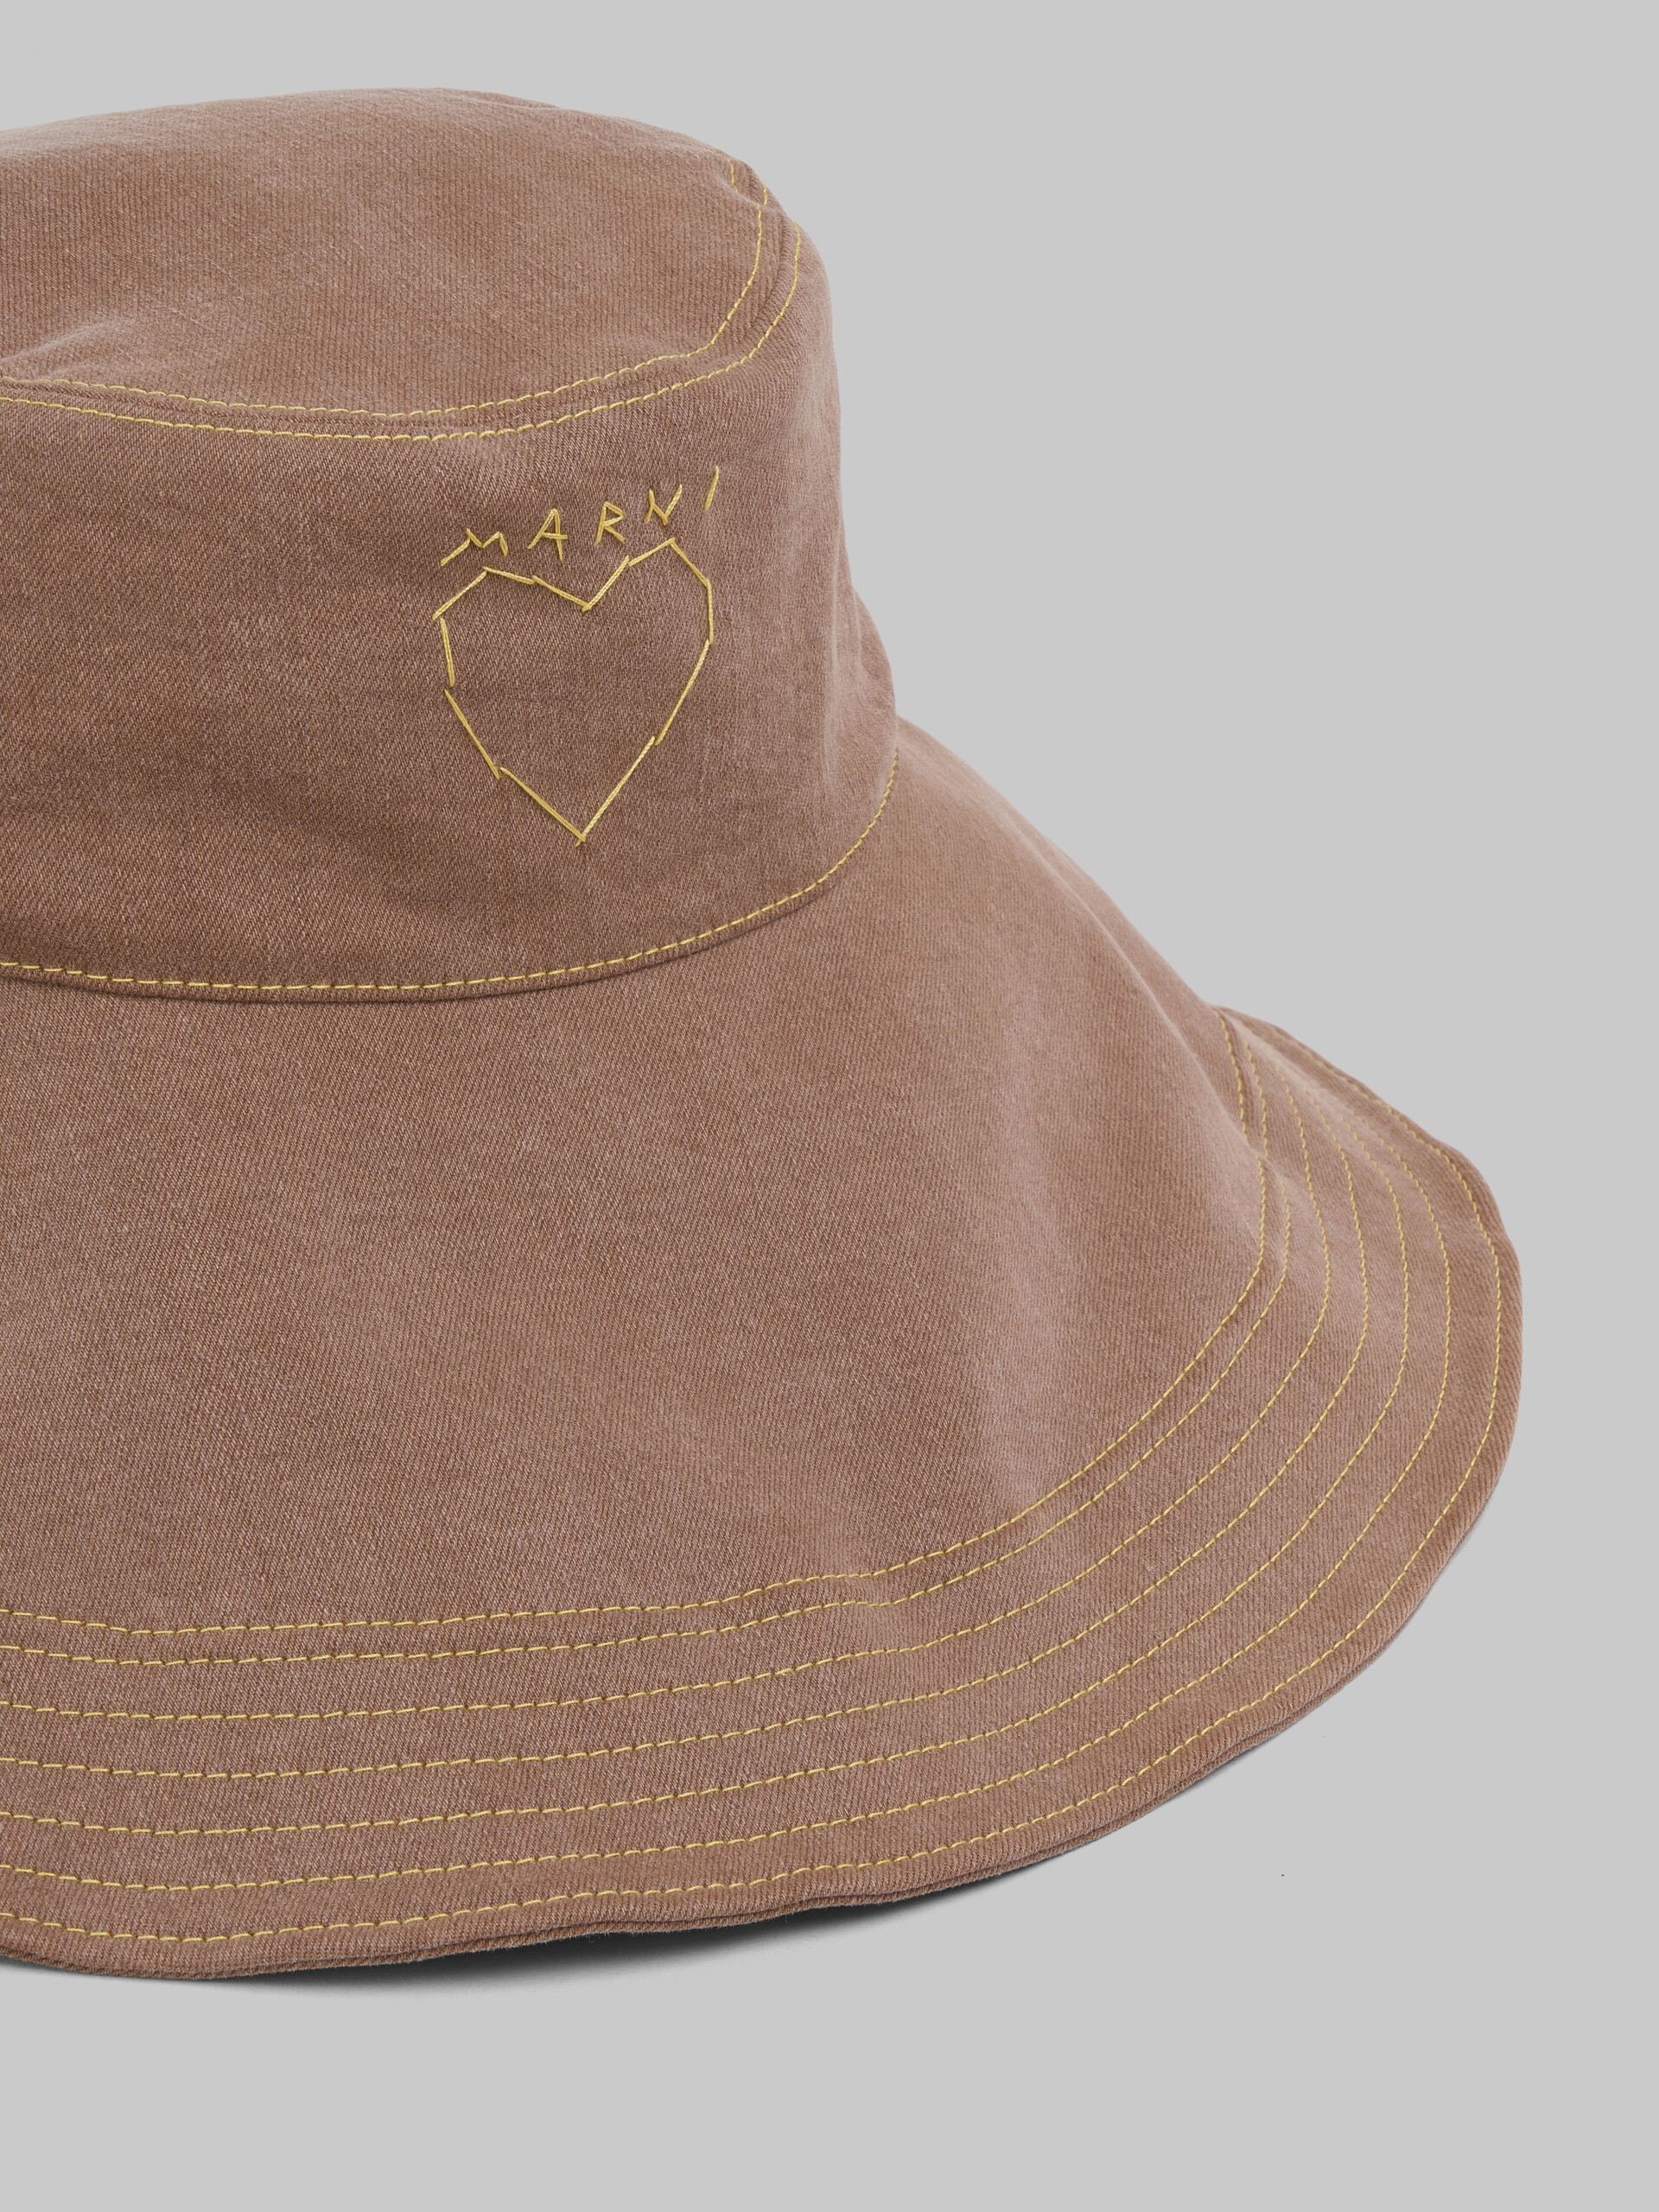 Sombrero en tejido vaquero orgánico marrón - Sombrero - Image 4